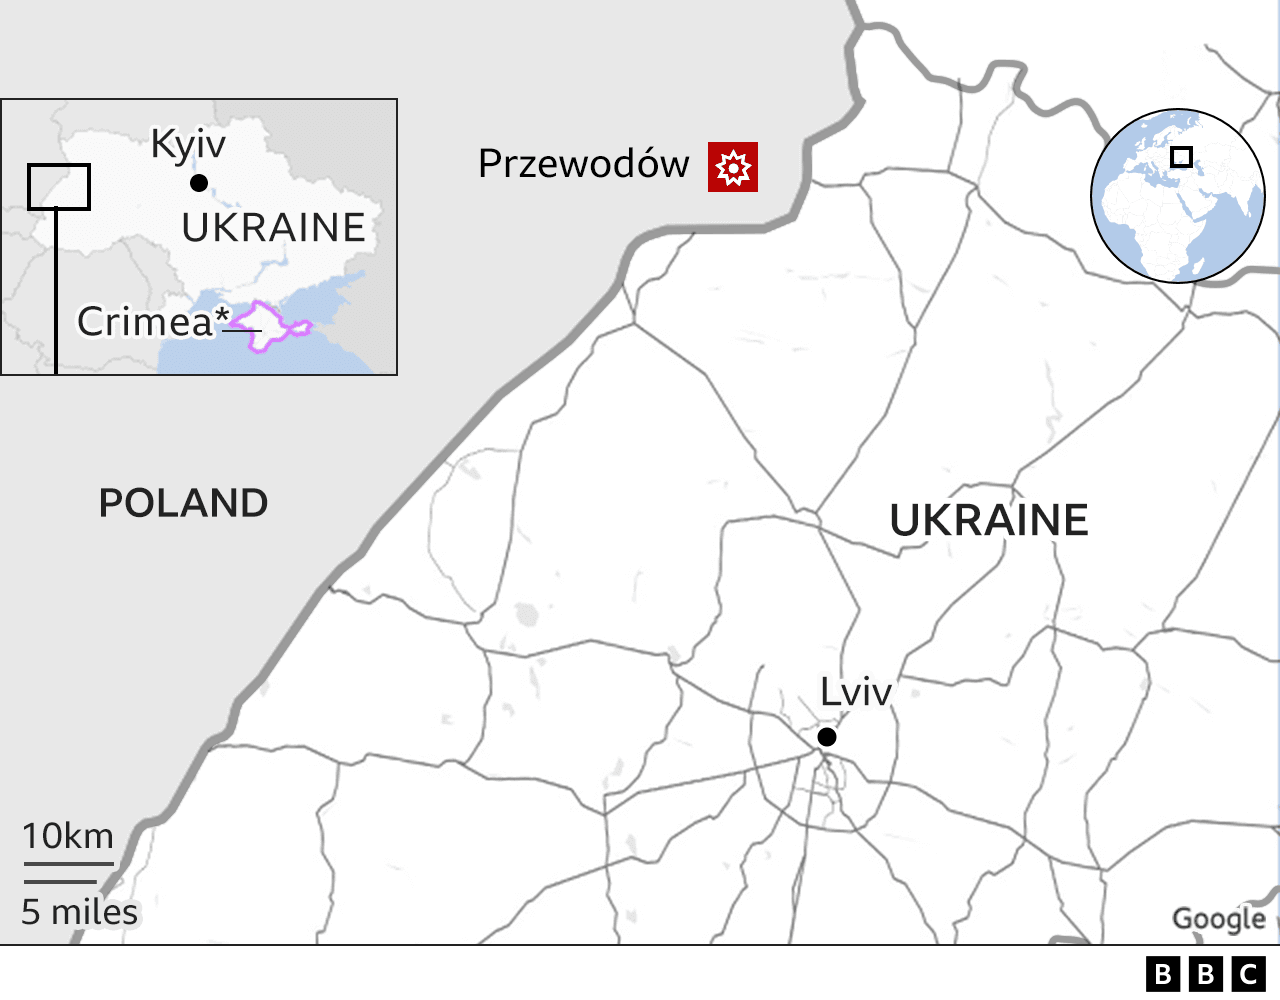 [출처: BBC] 우크라이나와 근접한 폴란드의 프셰보도프